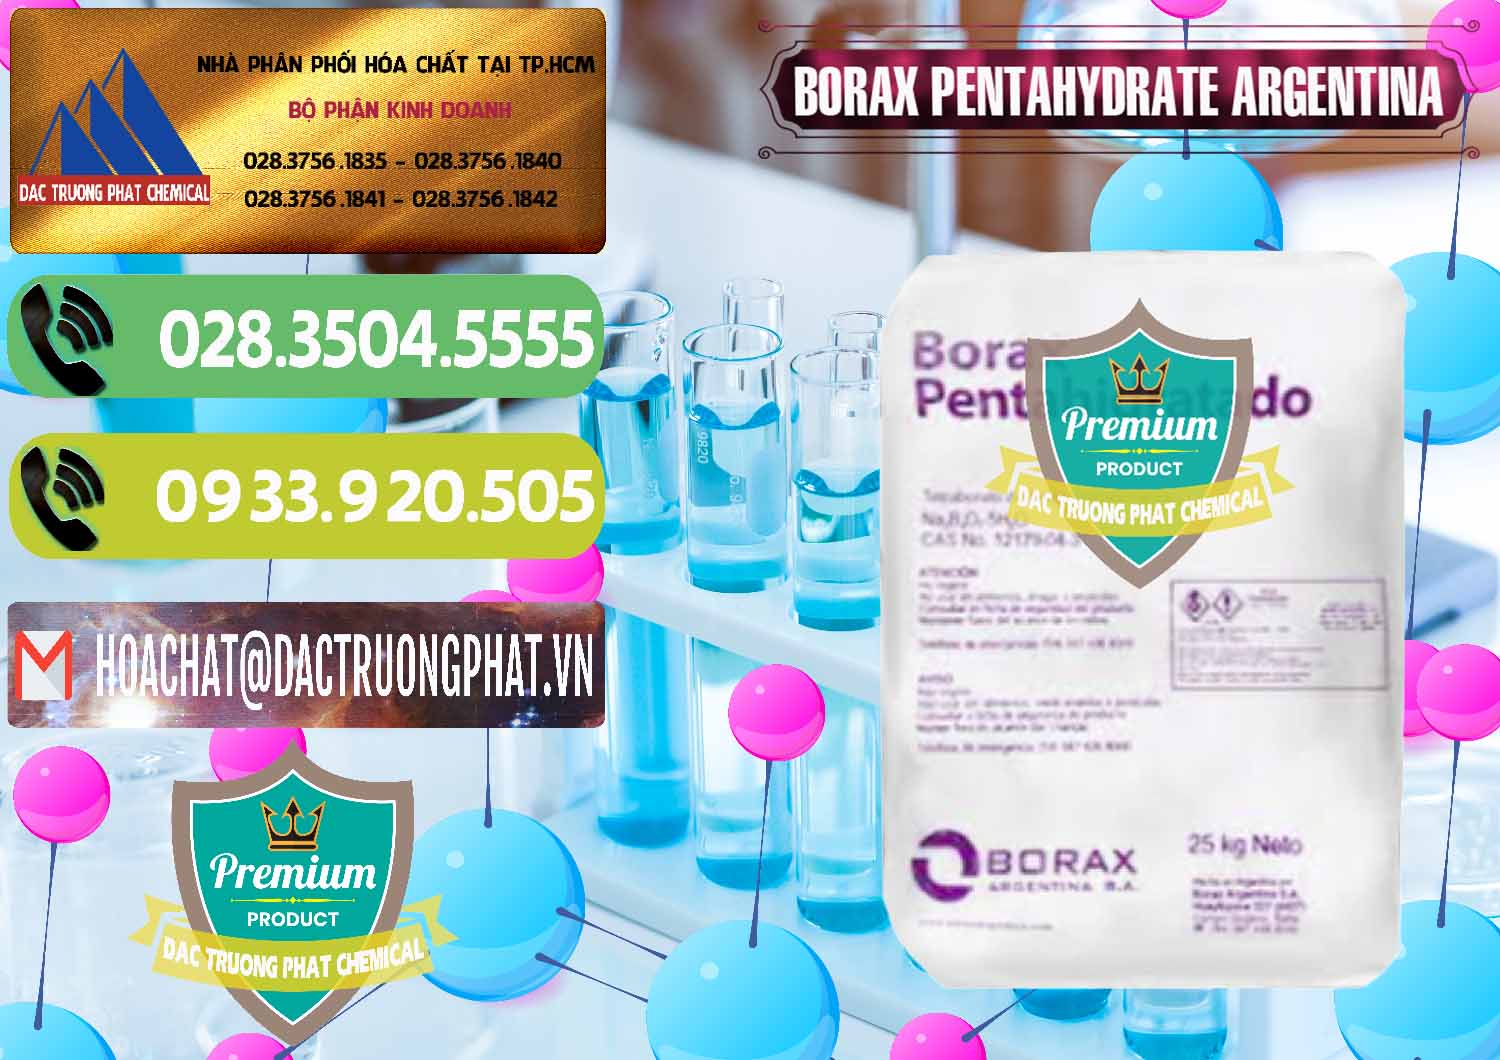 Cty chuyên nhập khẩu và bán Borax Pentahydrate Argentina - 0447 - Chuyên kinh doanh _ phân phối hóa chất tại TP.HCM - hoachatmientay.vn